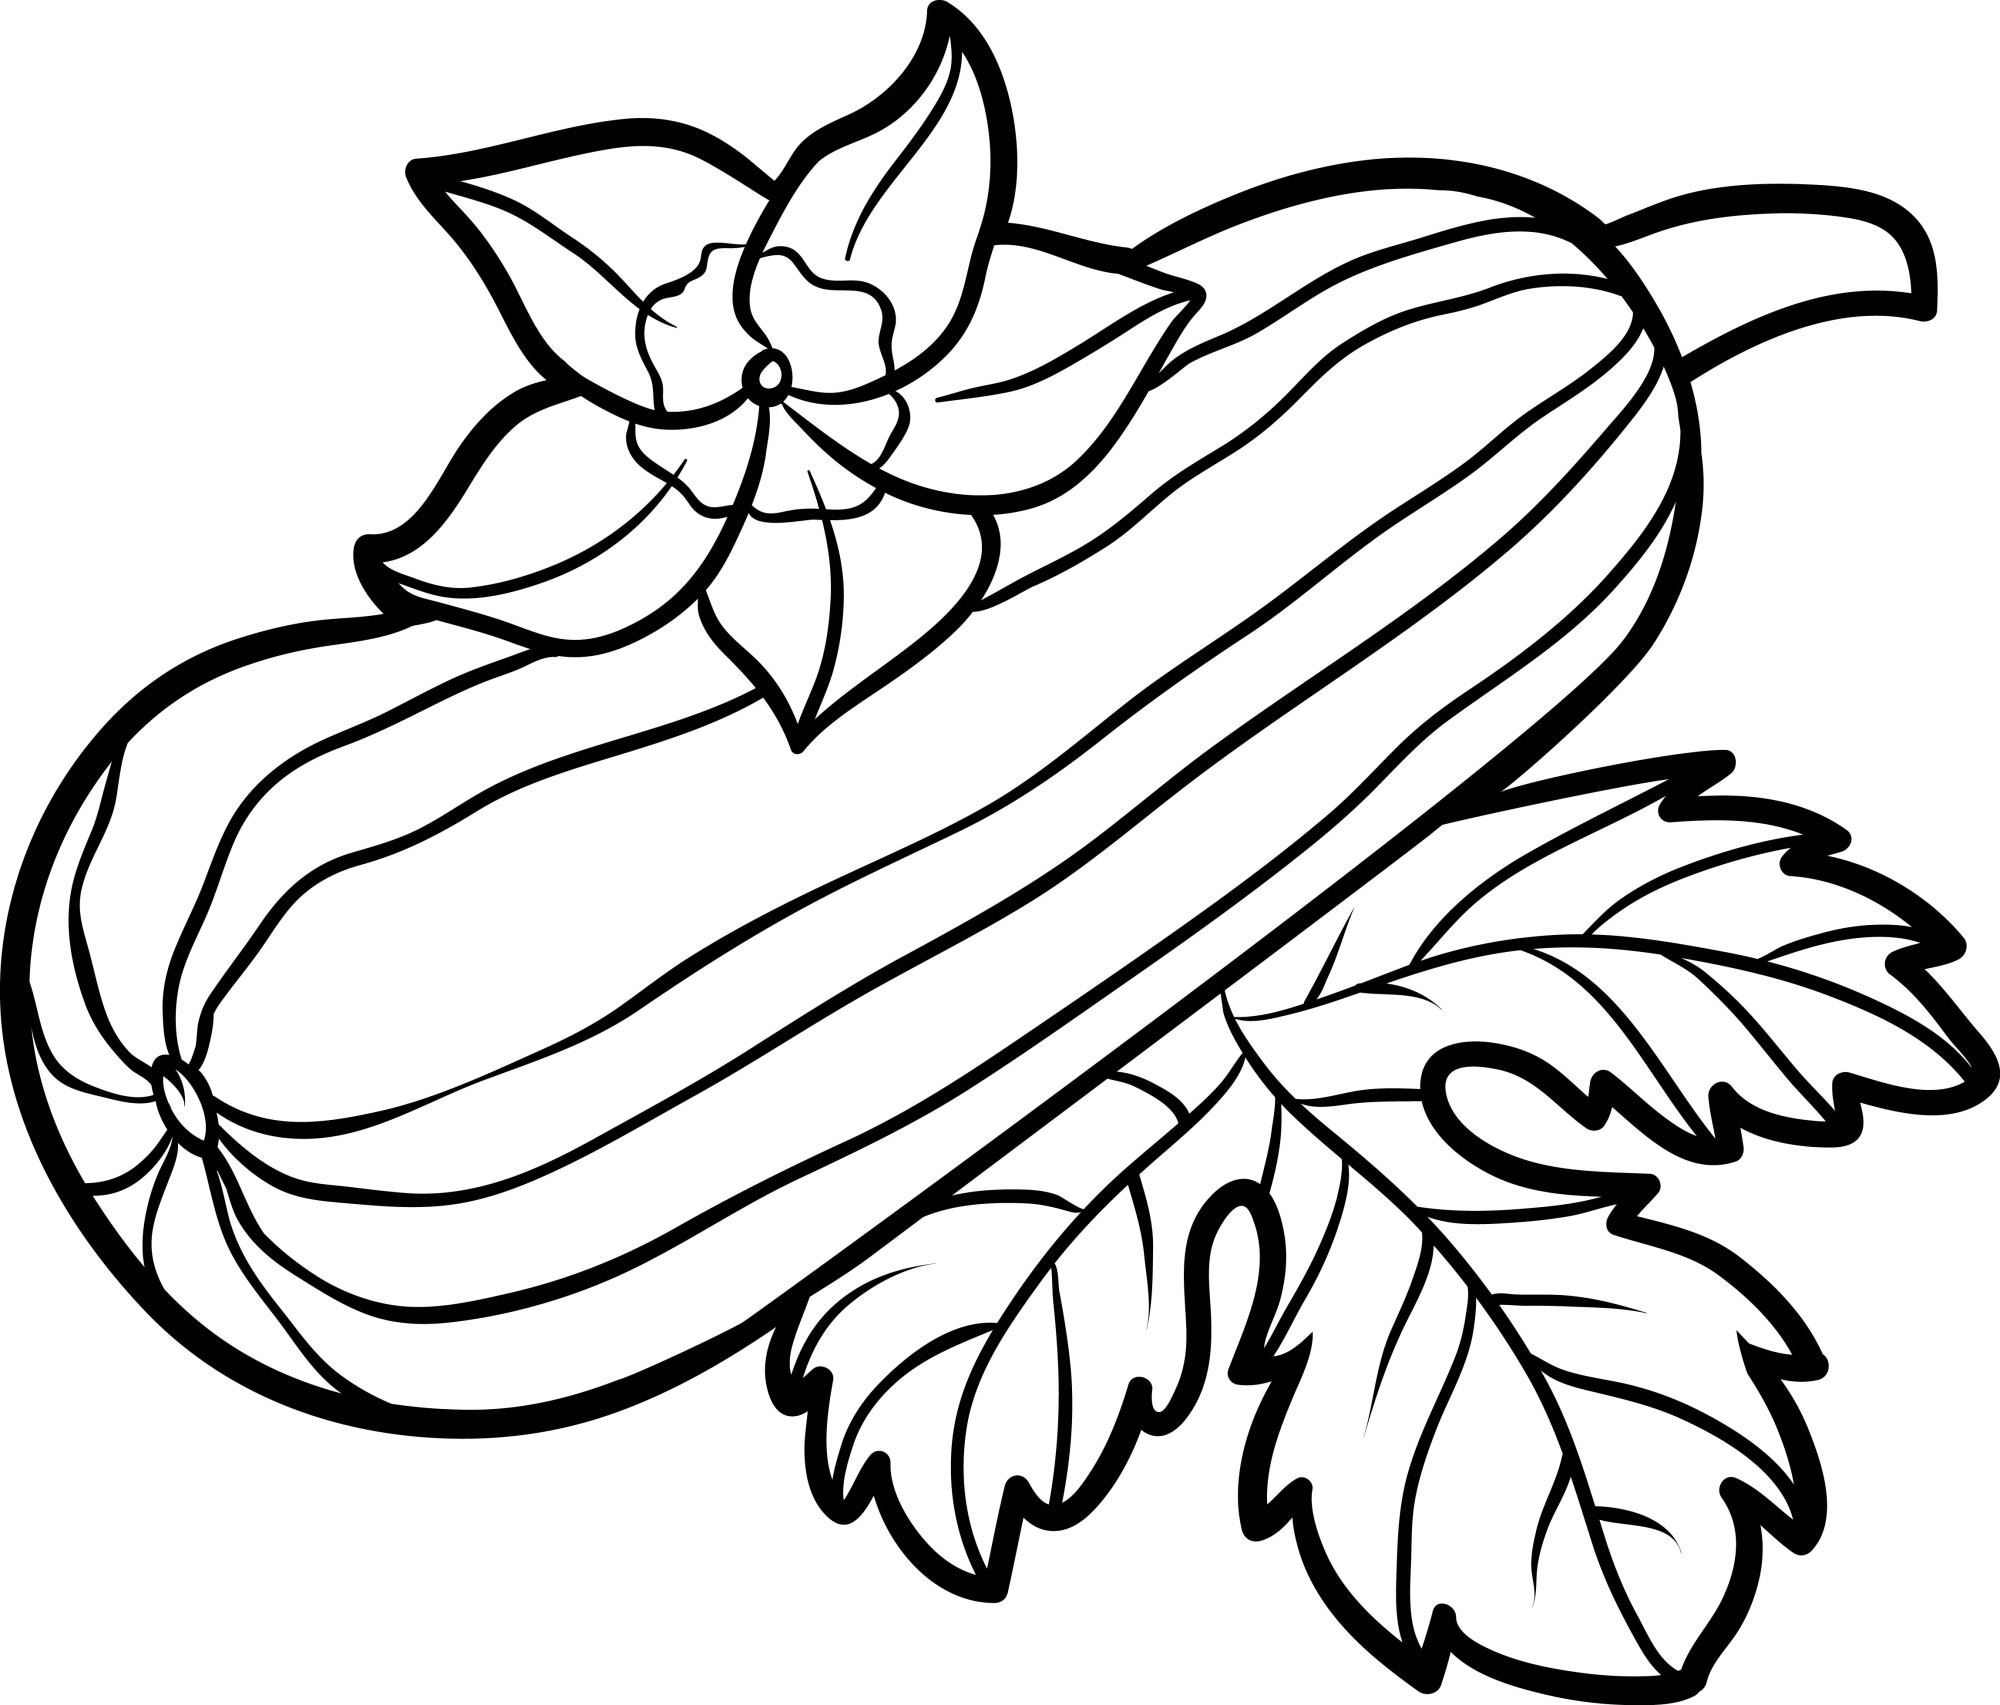 Раскраска для детей: кабачок на листьях в саду